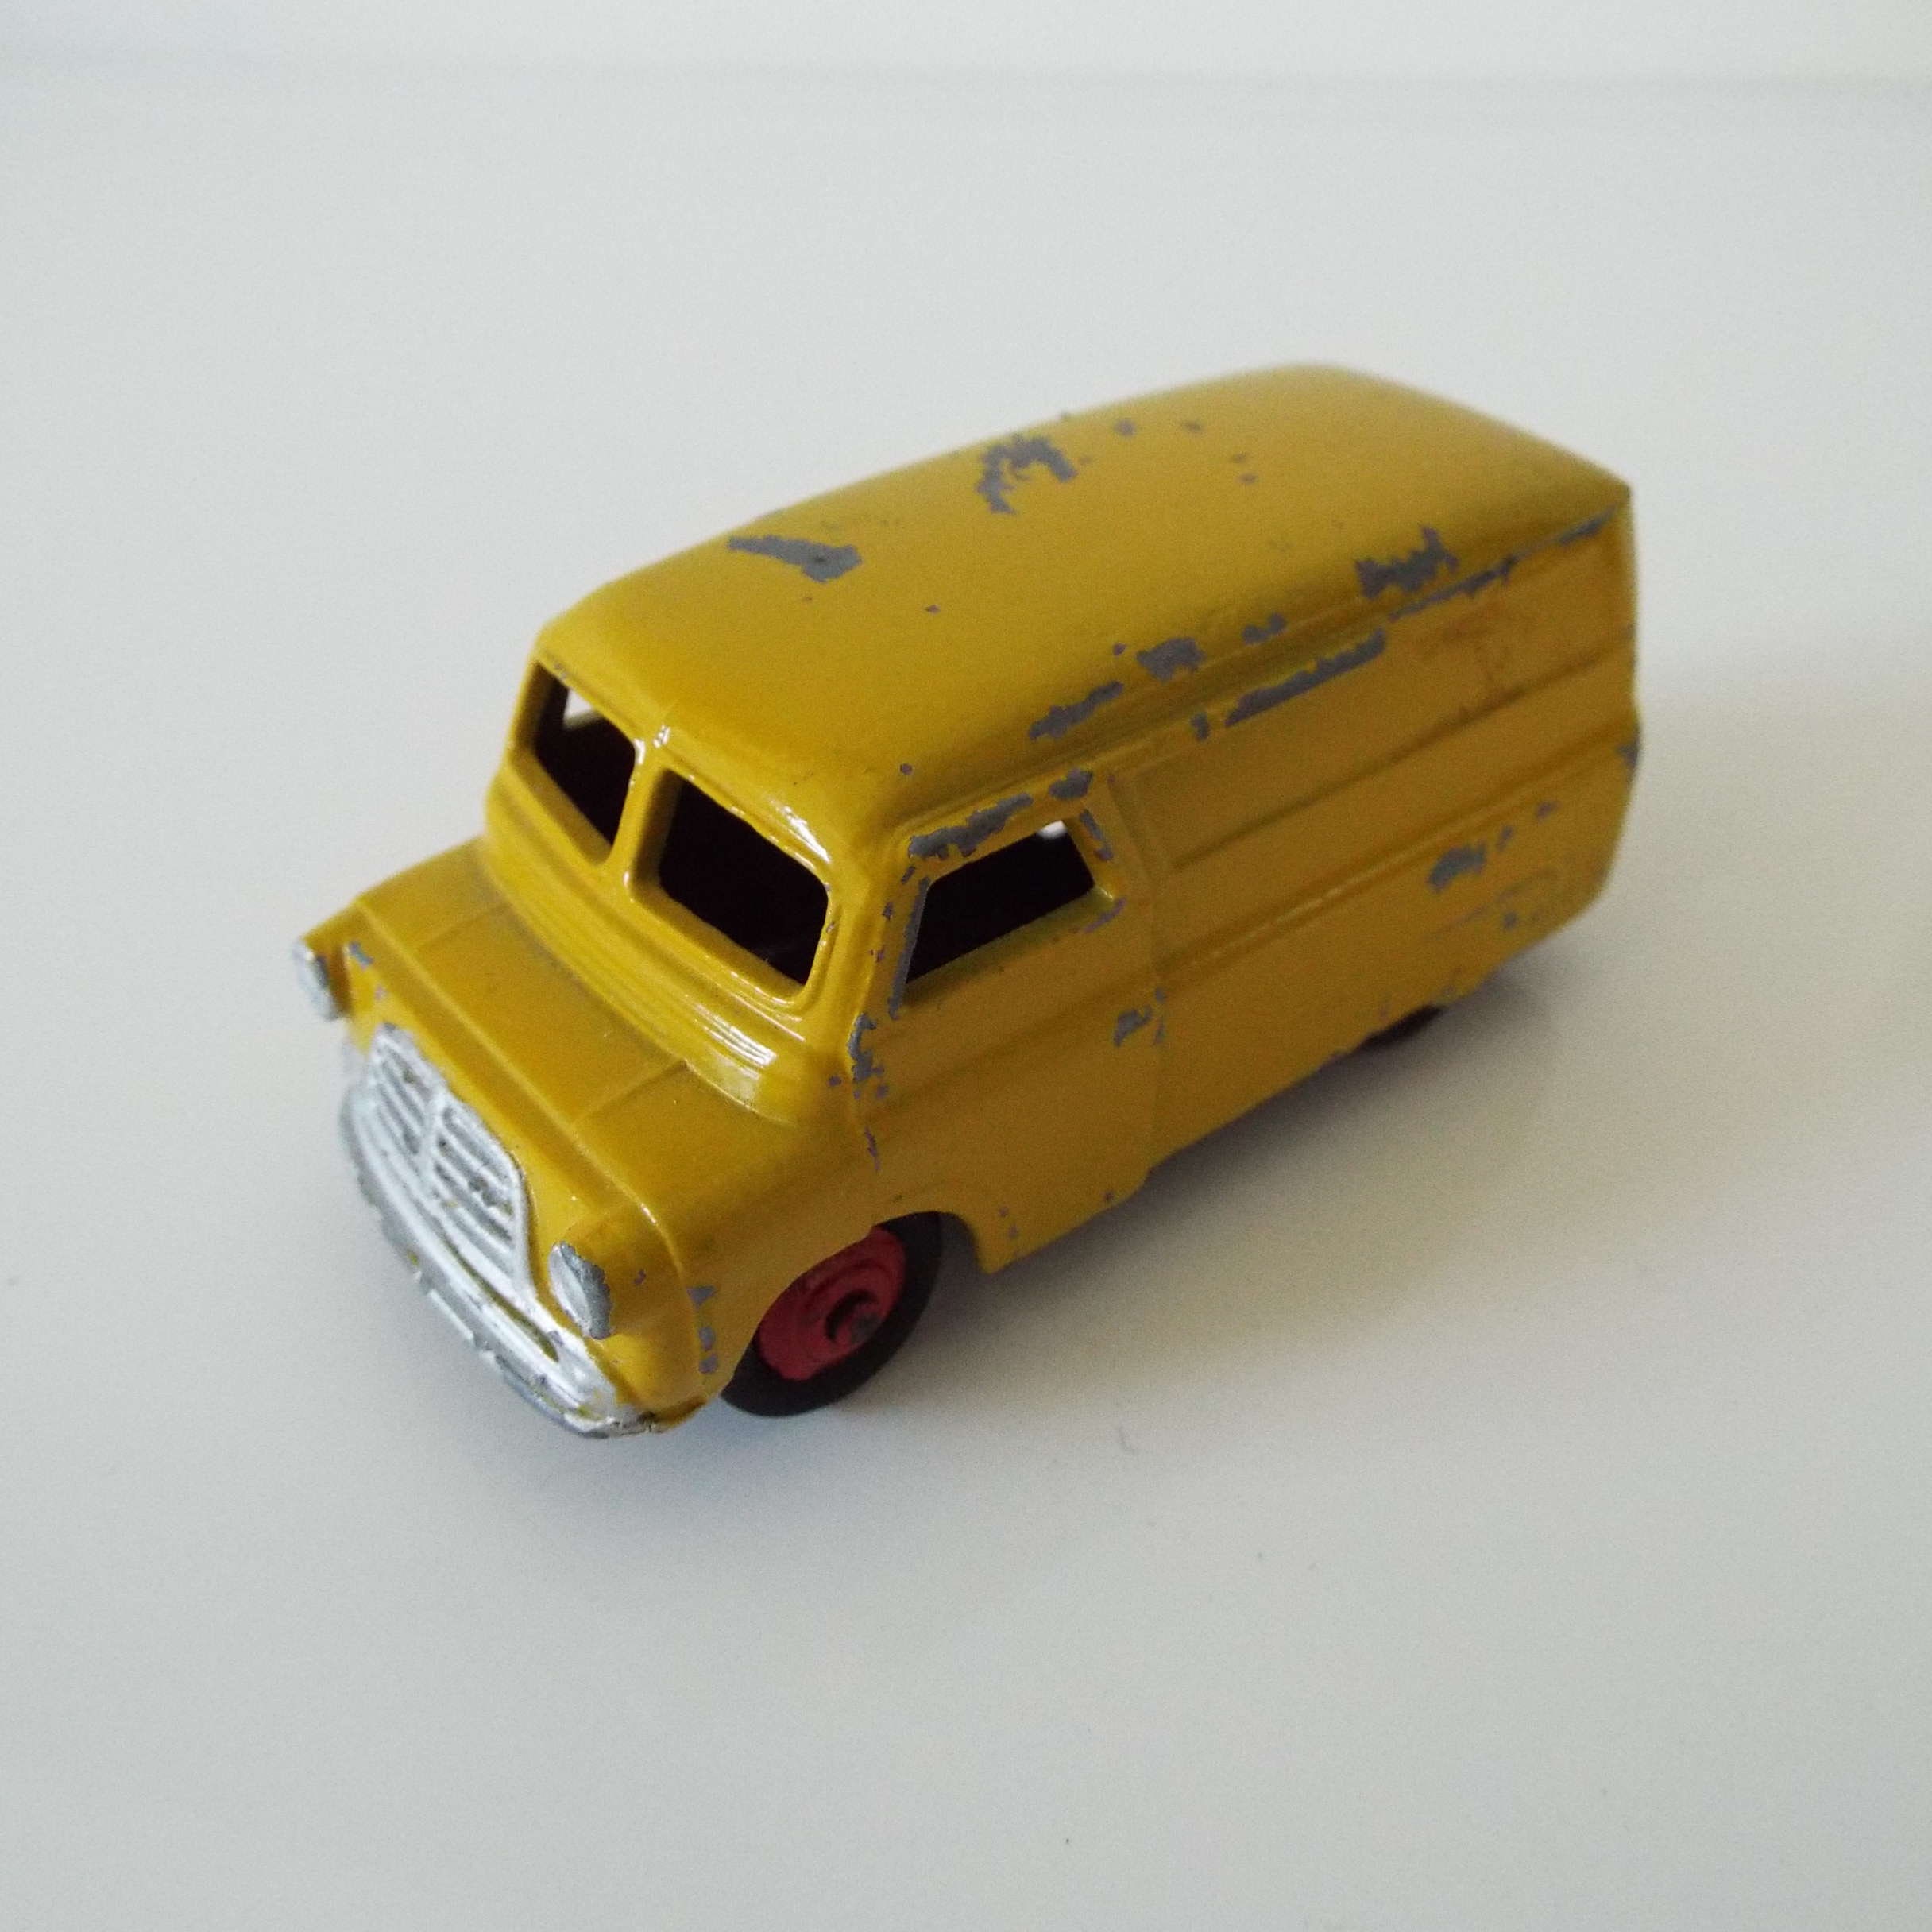 Bedford　480　Dinky　1950's　Toy　Denmark　Van　Van　Vintage　kodak　Toy　Etsy